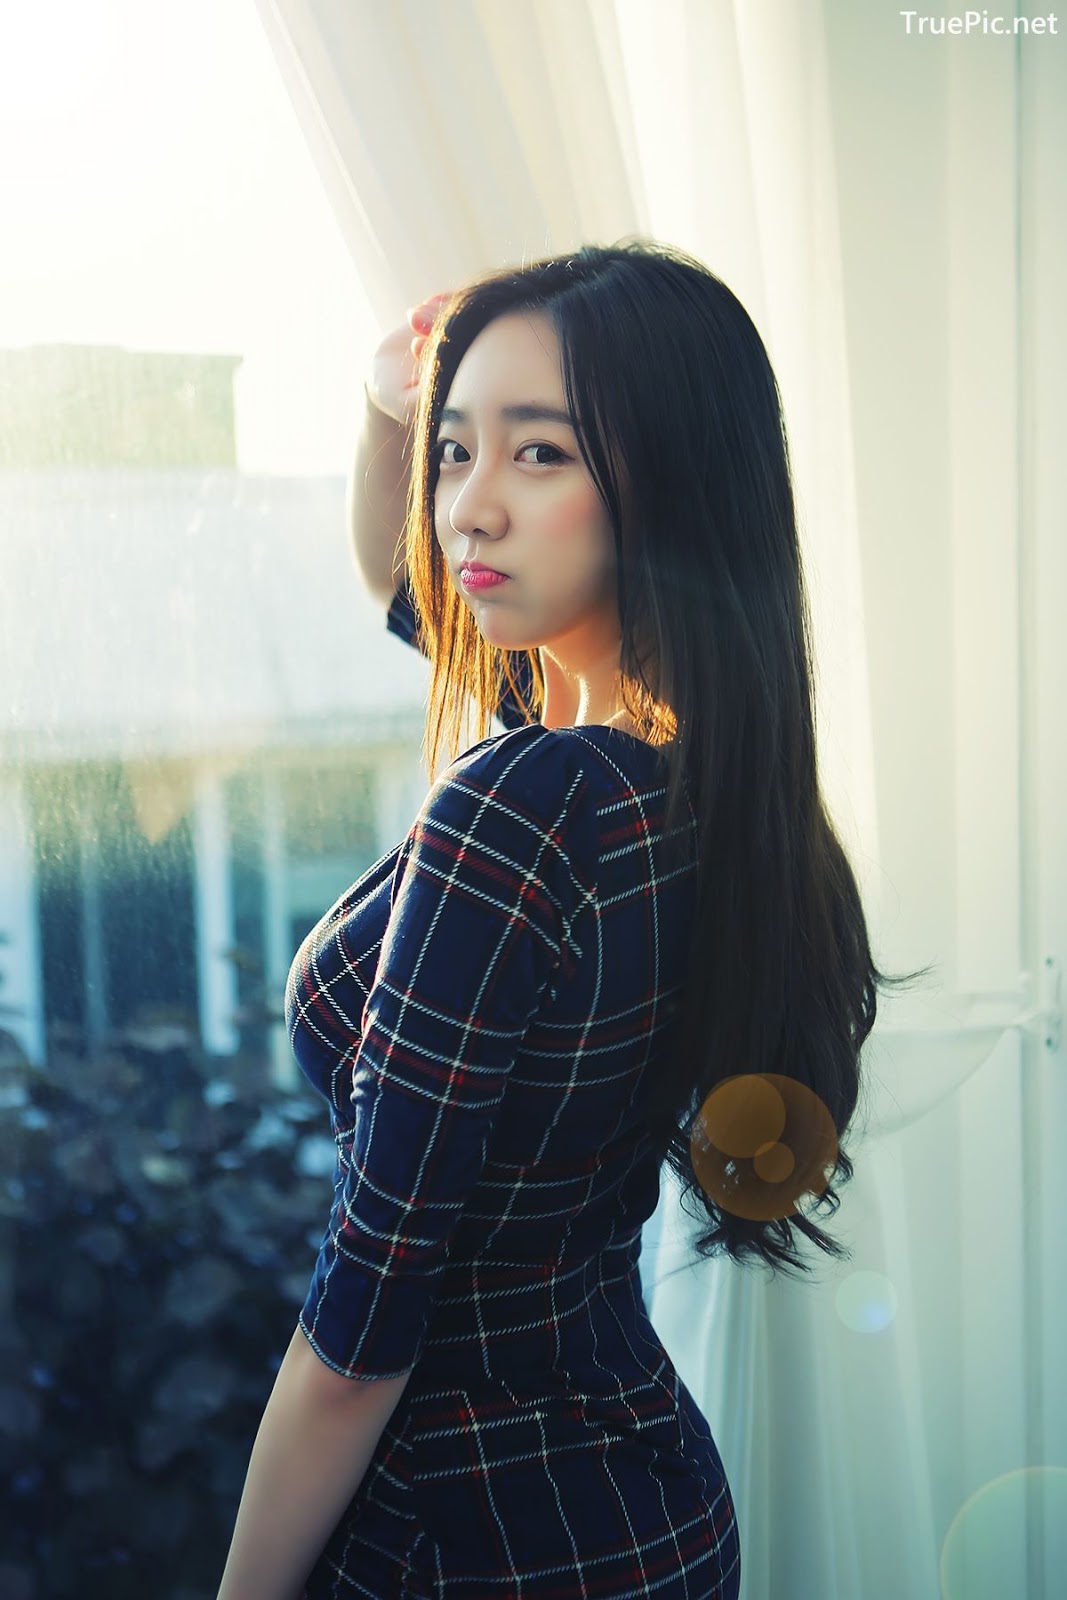 Image-Korean-Hot-Model-Go-Eun-Yang-Indoor-Photoshoot-Collection-TruePic.net- Picture-66